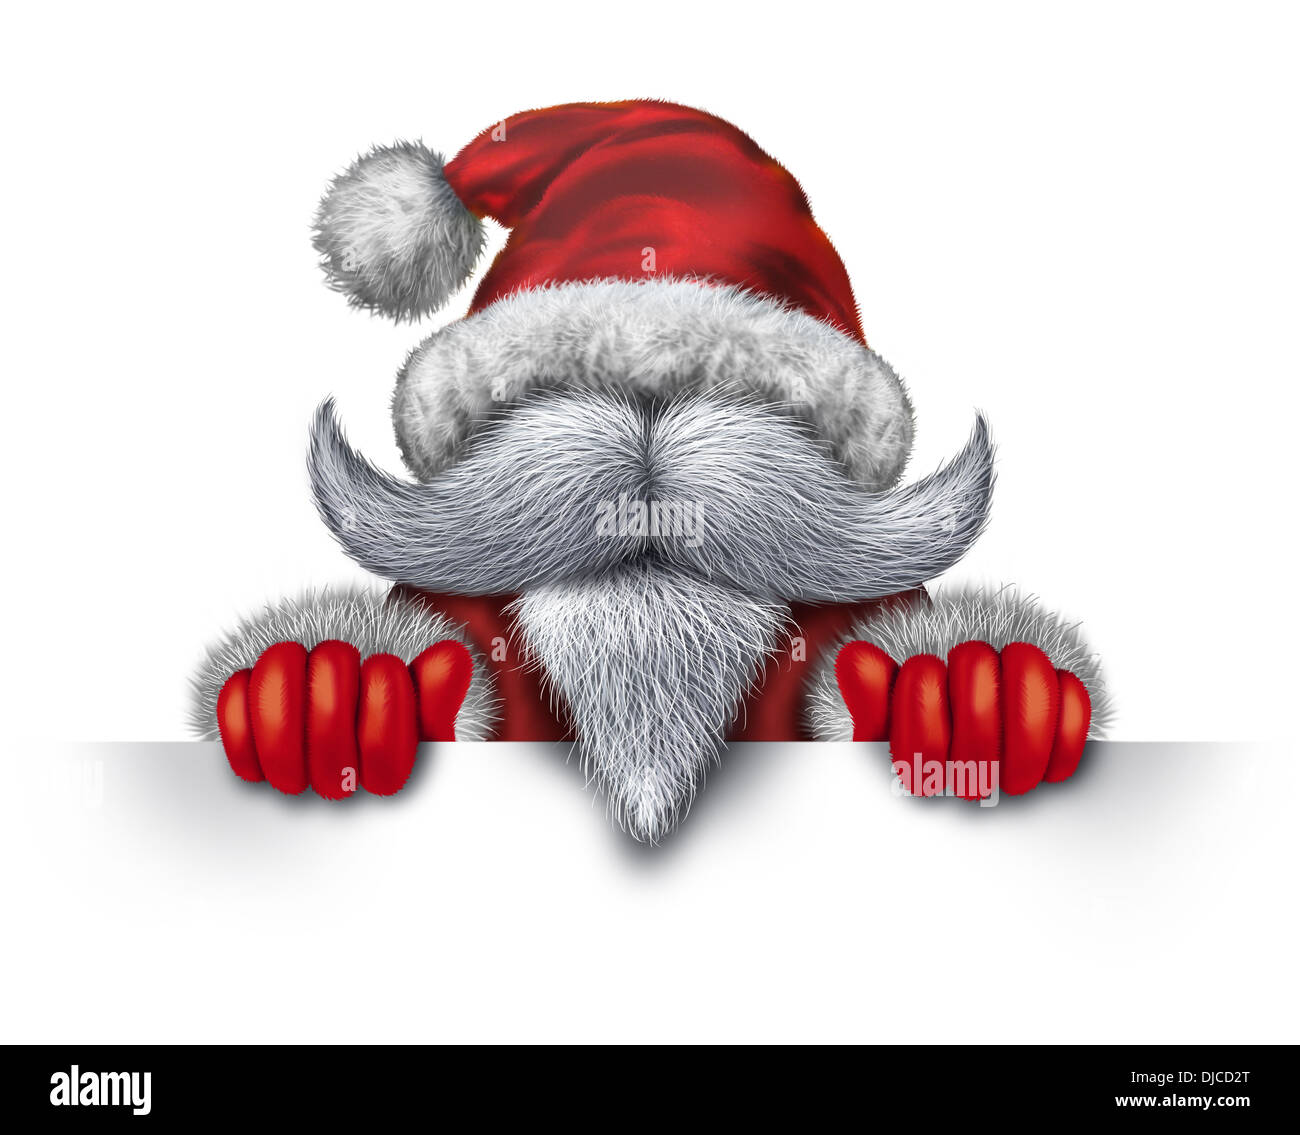 Santa Claus holding a blank sign horizontale sous la forme d'une icône avec une barbe blanche et un costume rouge neige pour Noël fun et joyeux fête des vacances d'hiver sur fond blanc avec l'exemplaire de l'espace. Banque D'Images